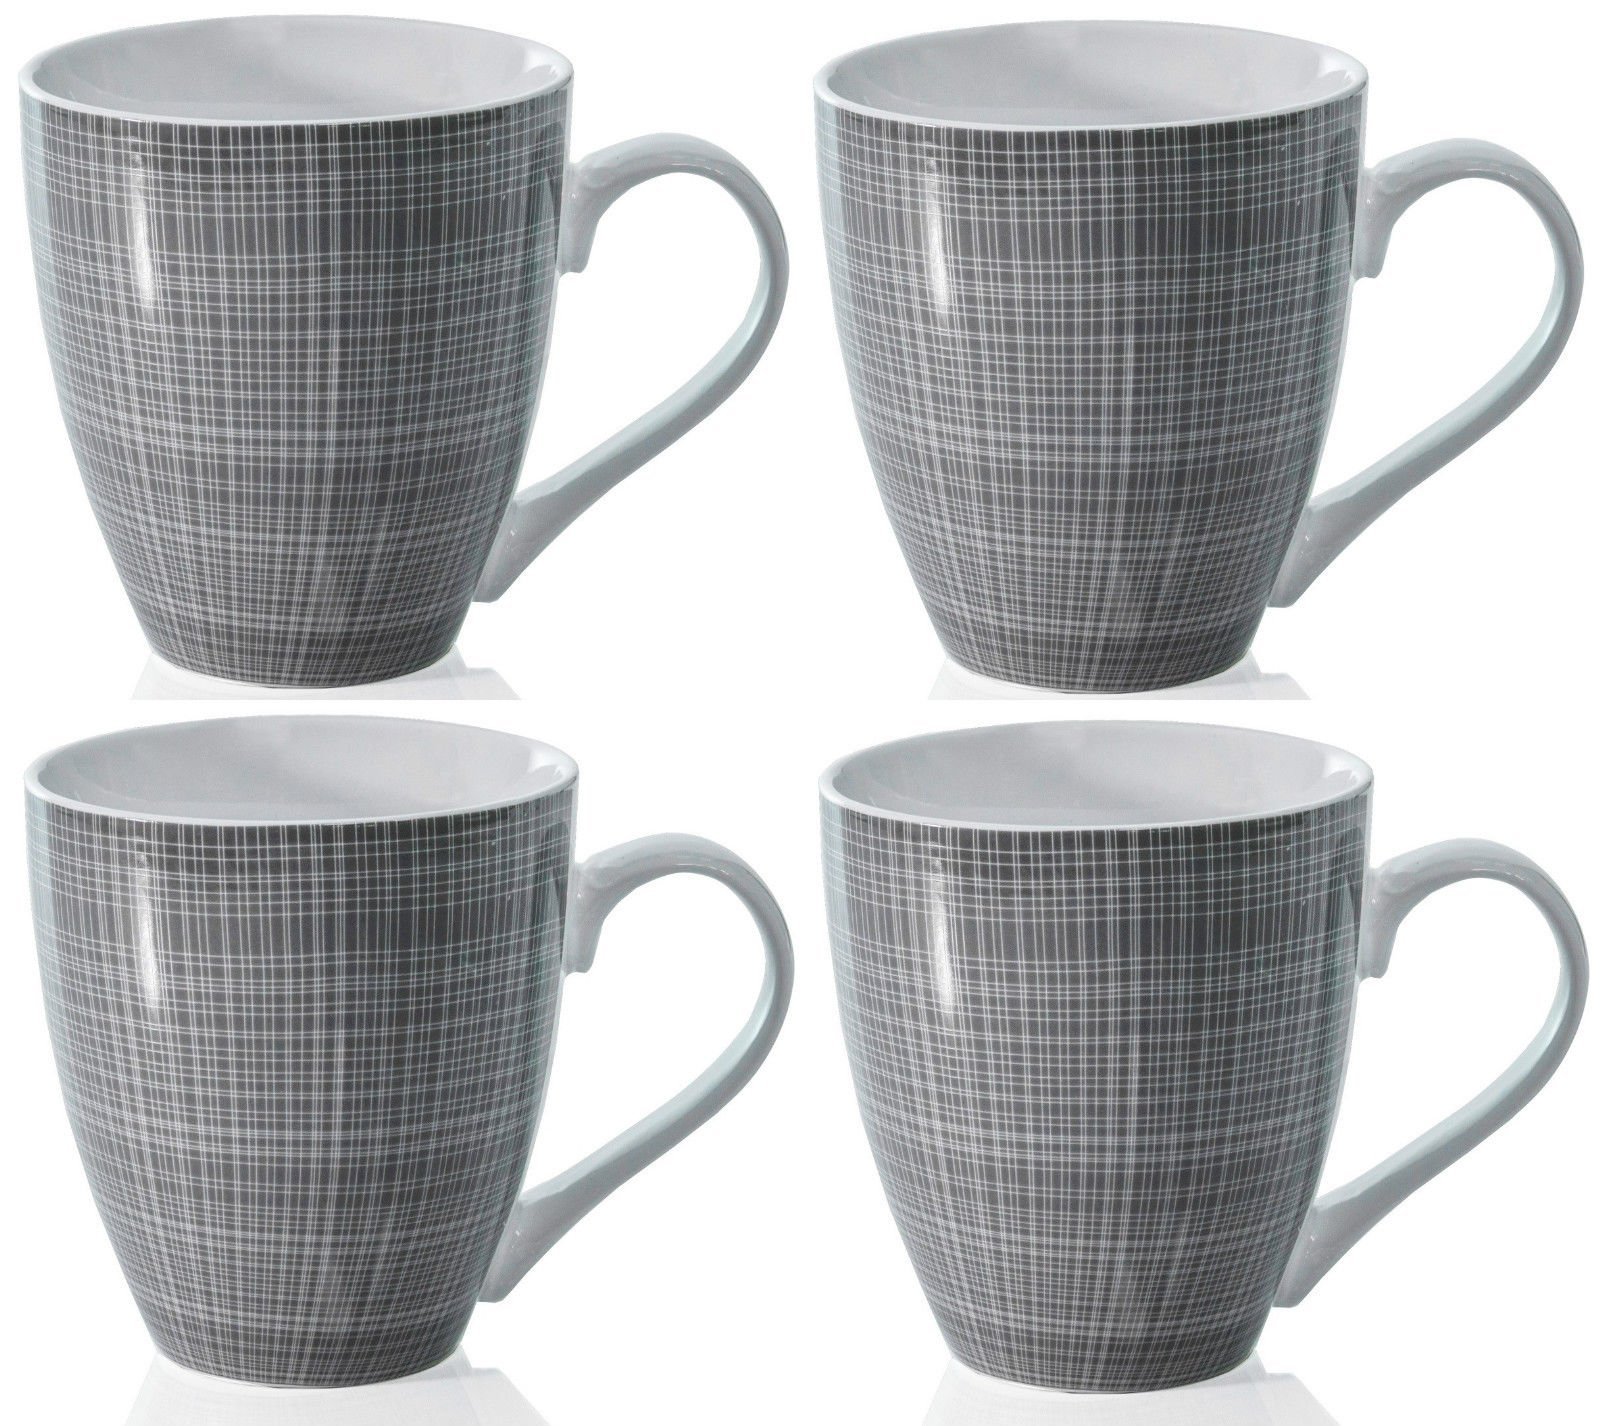 Promotions Sabichi Sketch Lot de 4 mugs en porcelaine Idéal pour boire du café/de la soupe/du chocolat chaud Taille XL, Porcelaine, gris LHk66BhLN bien vendre